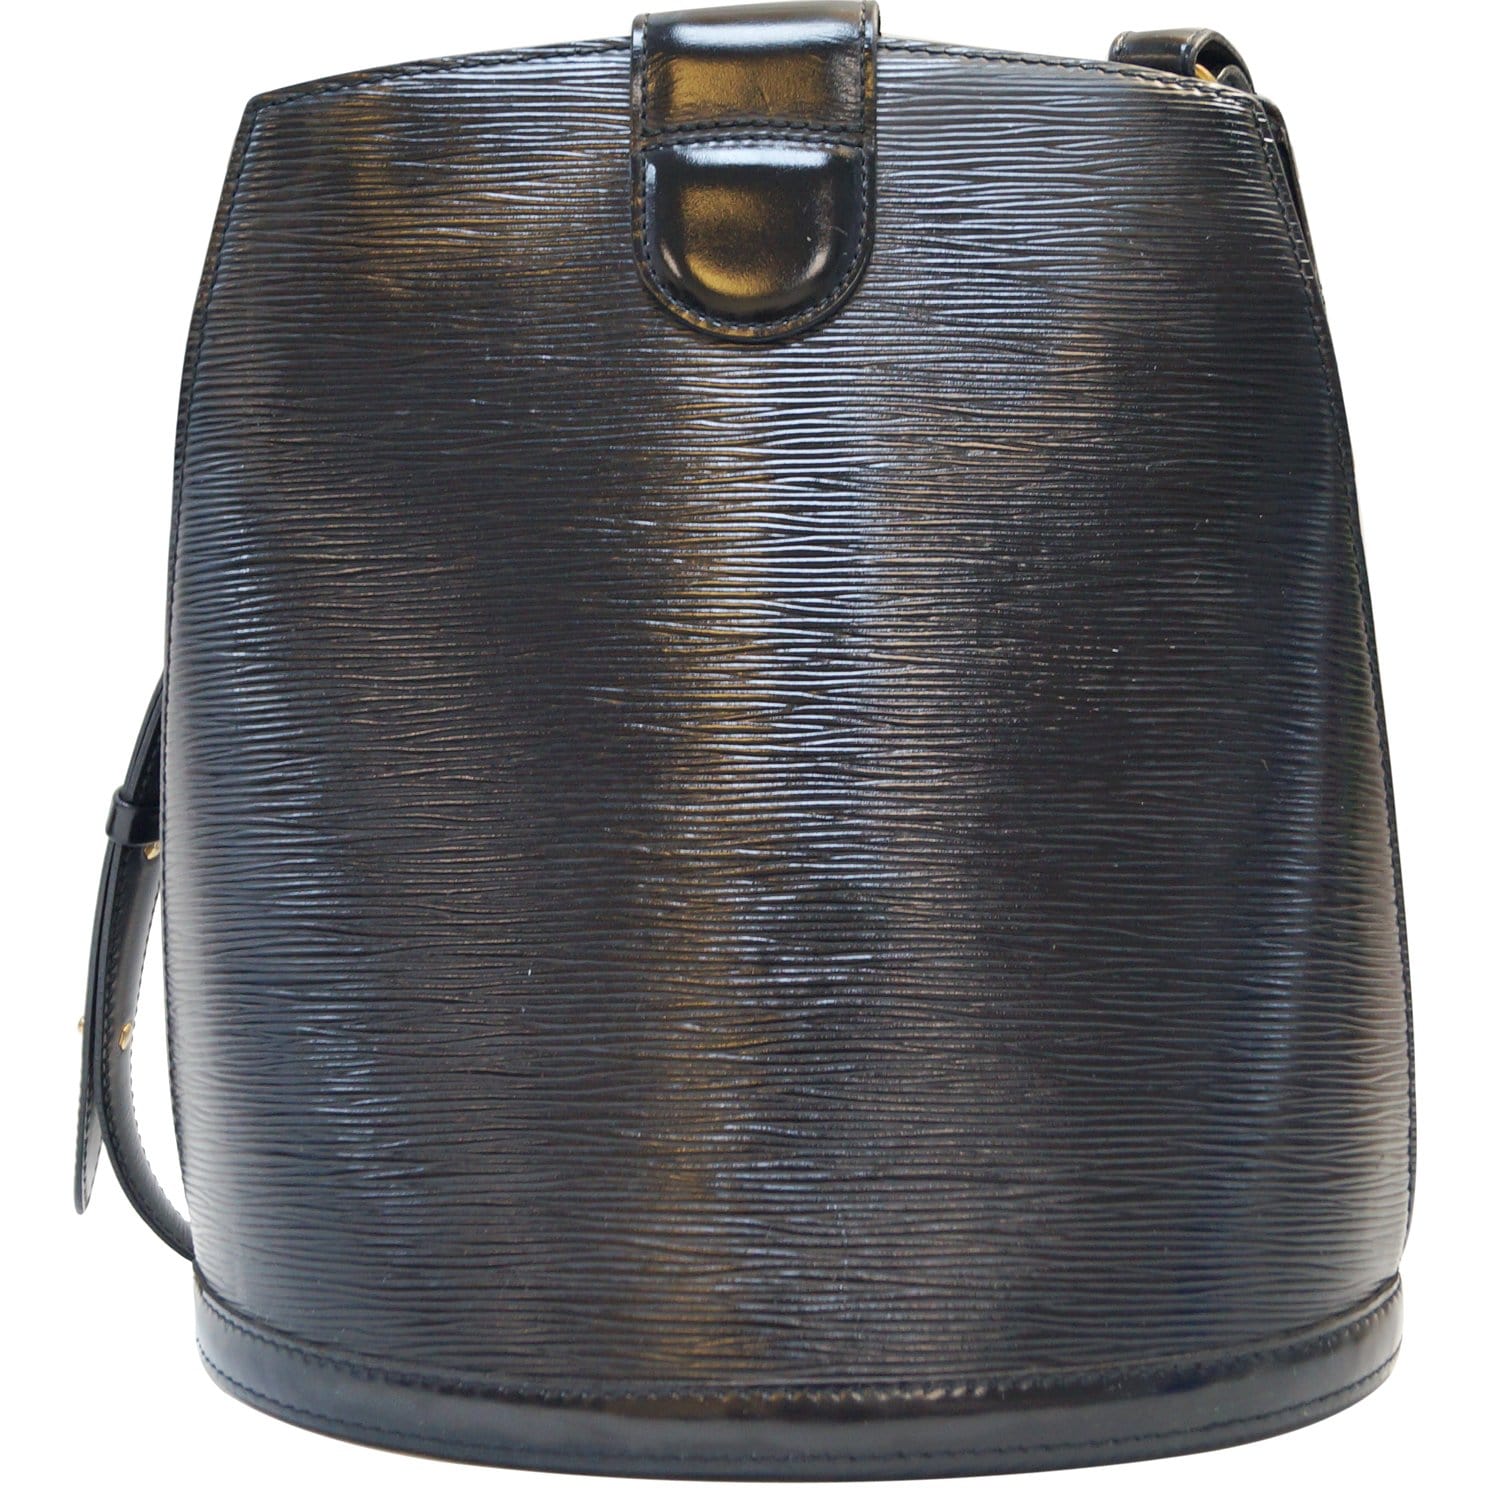 Cluny BB Epi – Keeks Designer Handbags